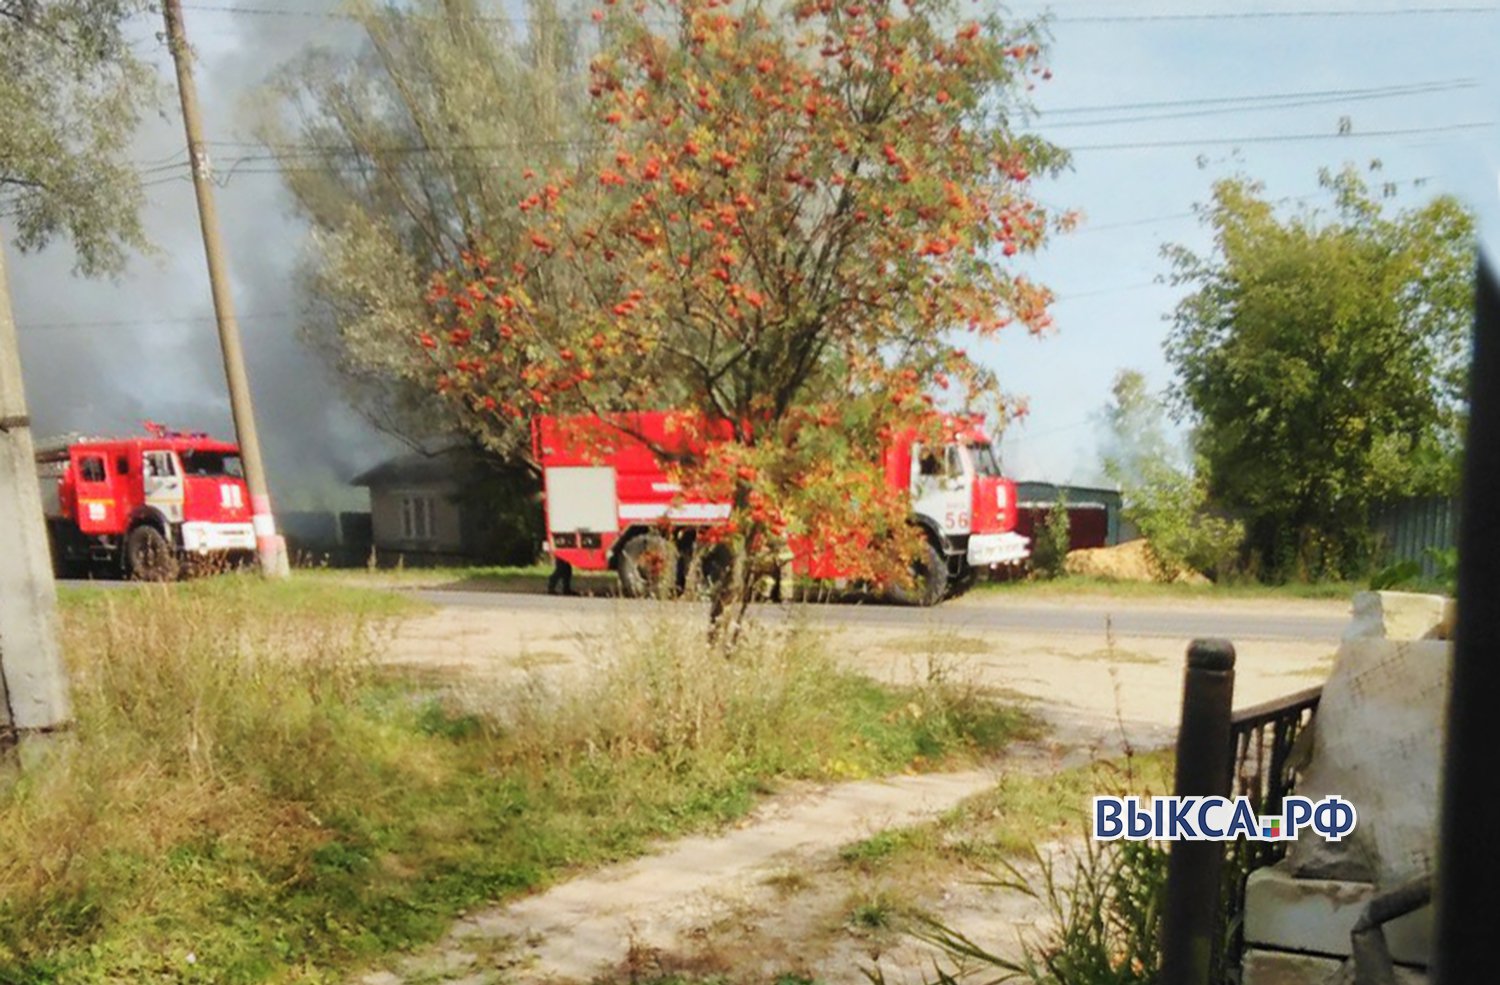 Мужчина пострадал на пожаре в Антоповке